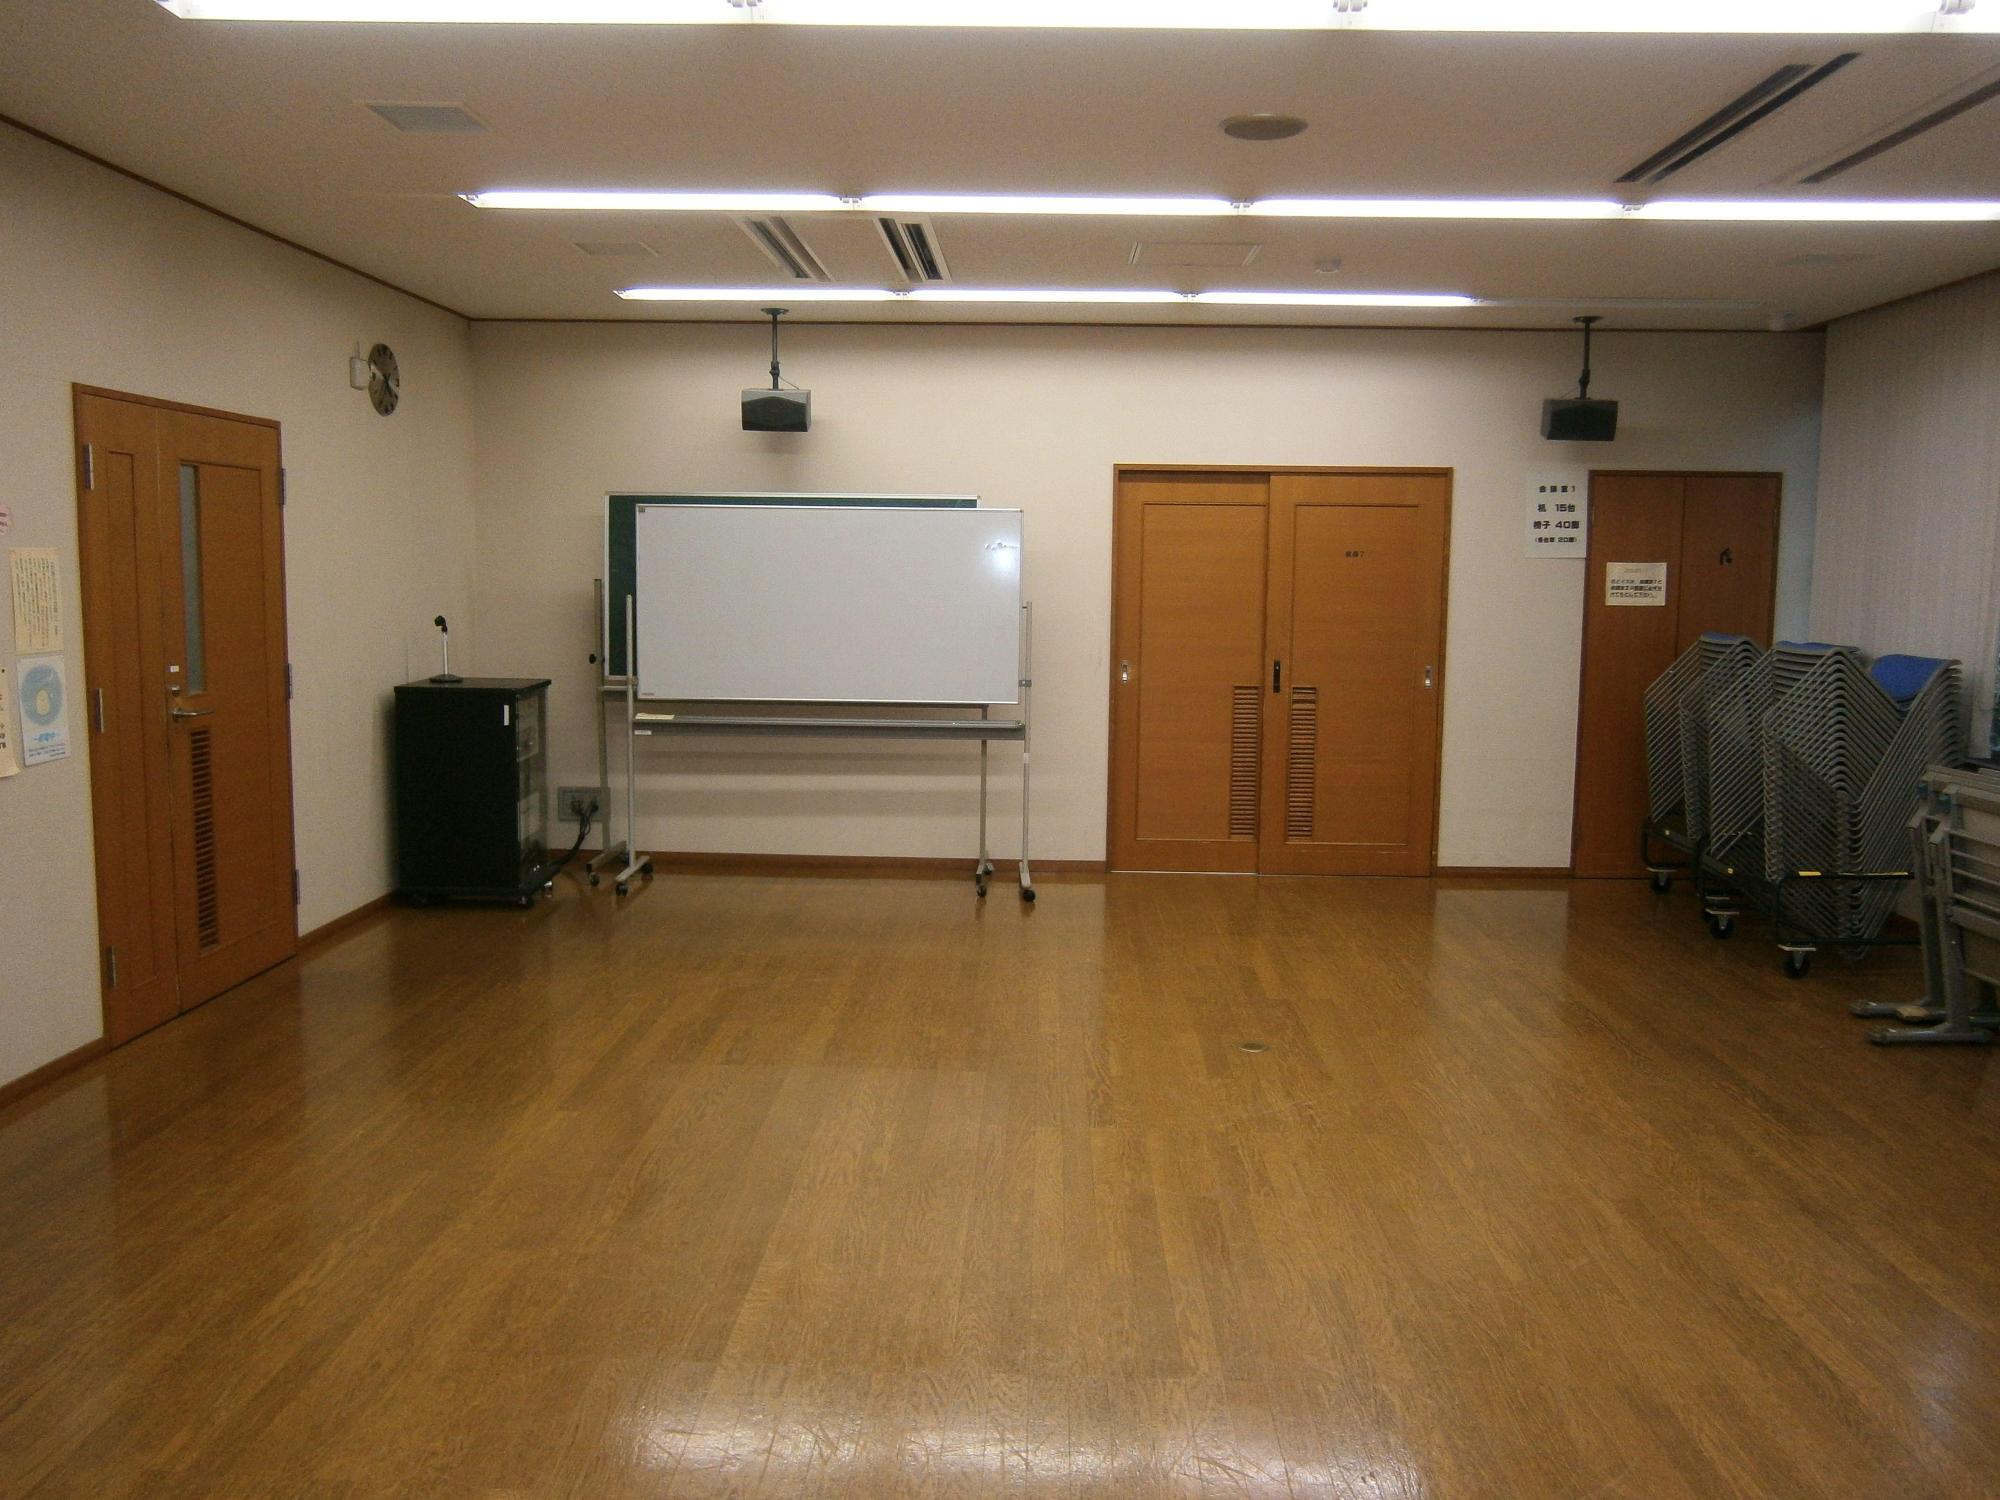 左側に出入口のドアがあり、室内の奥に可動式の黒板とホワイトボードが置かれ、右壁側に椅子と長机が積み上げられている会議室の写真